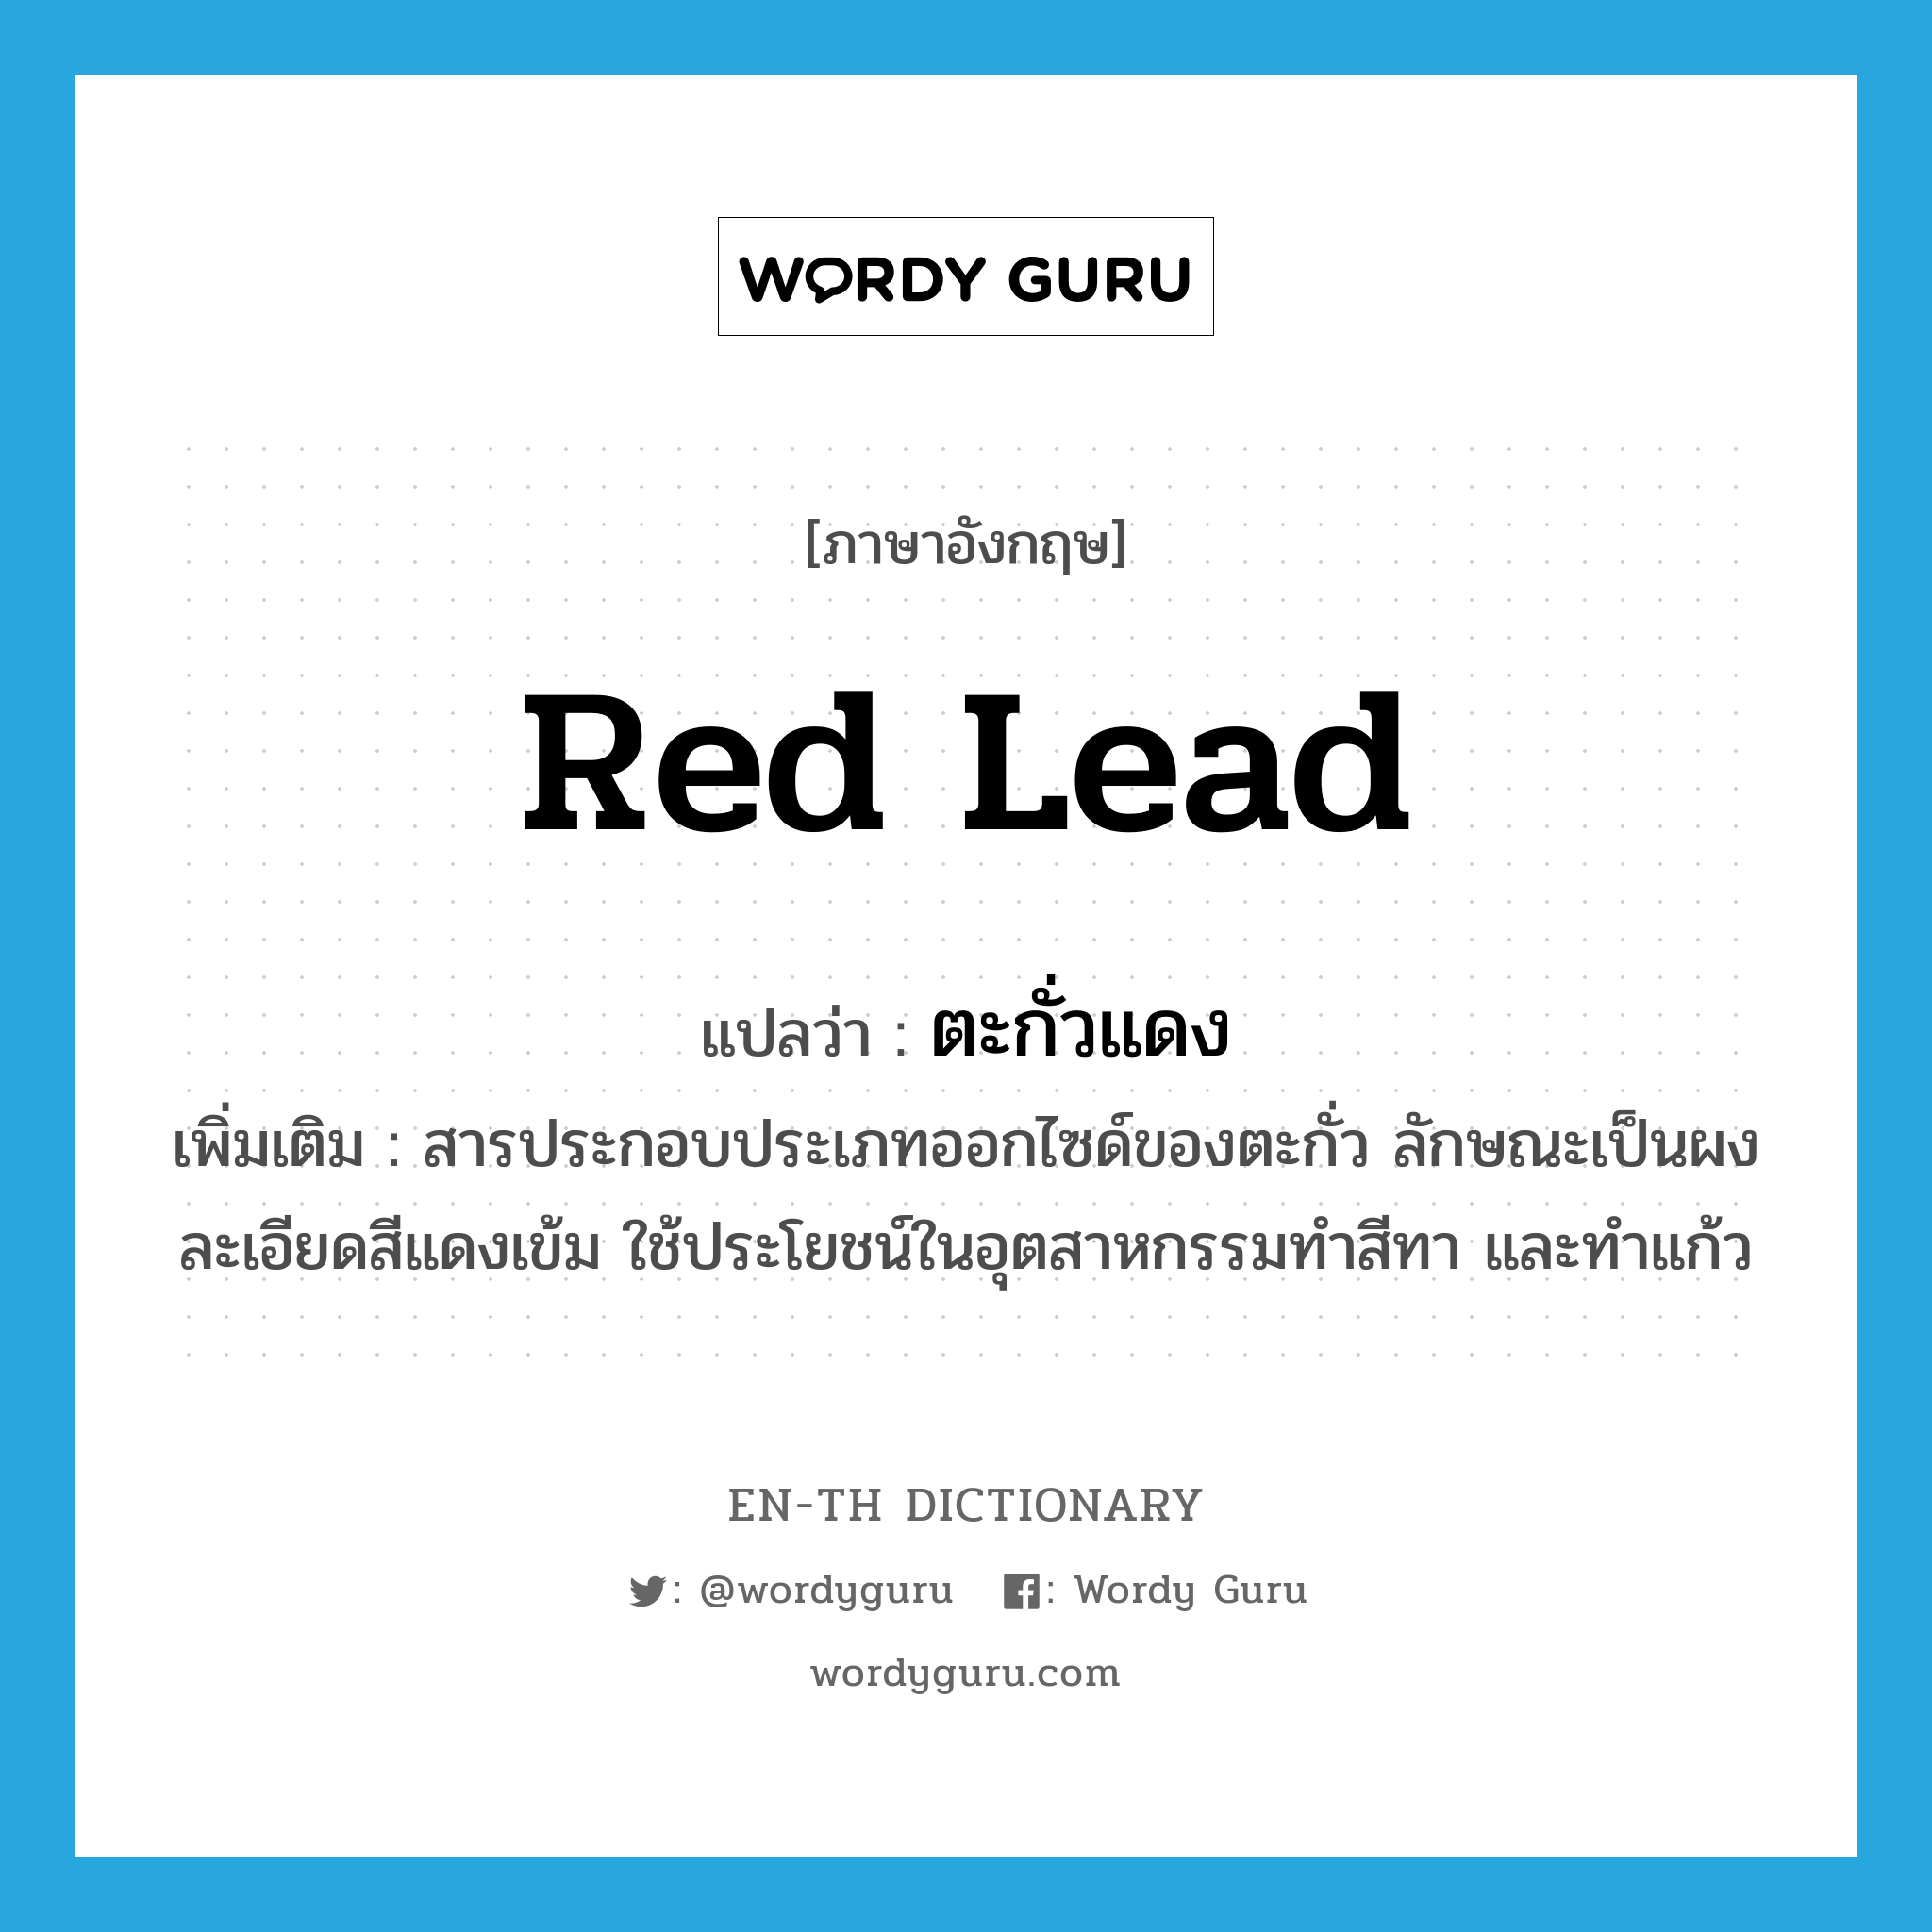 red lead แปลว่า?, คำศัพท์ภาษาอังกฤษ red lead แปลว่า ตะกั่วแดง ประเภท N เพิ่มเติม สารประกอบประเภทออกไซด์ของตะกั่ว ลักษณะเป็นผงละเอียดสีแดงเข้ม ใช้ประโยชน์ในอุตสาหกรรมทำสีทา และทำแก้ว หมวด N